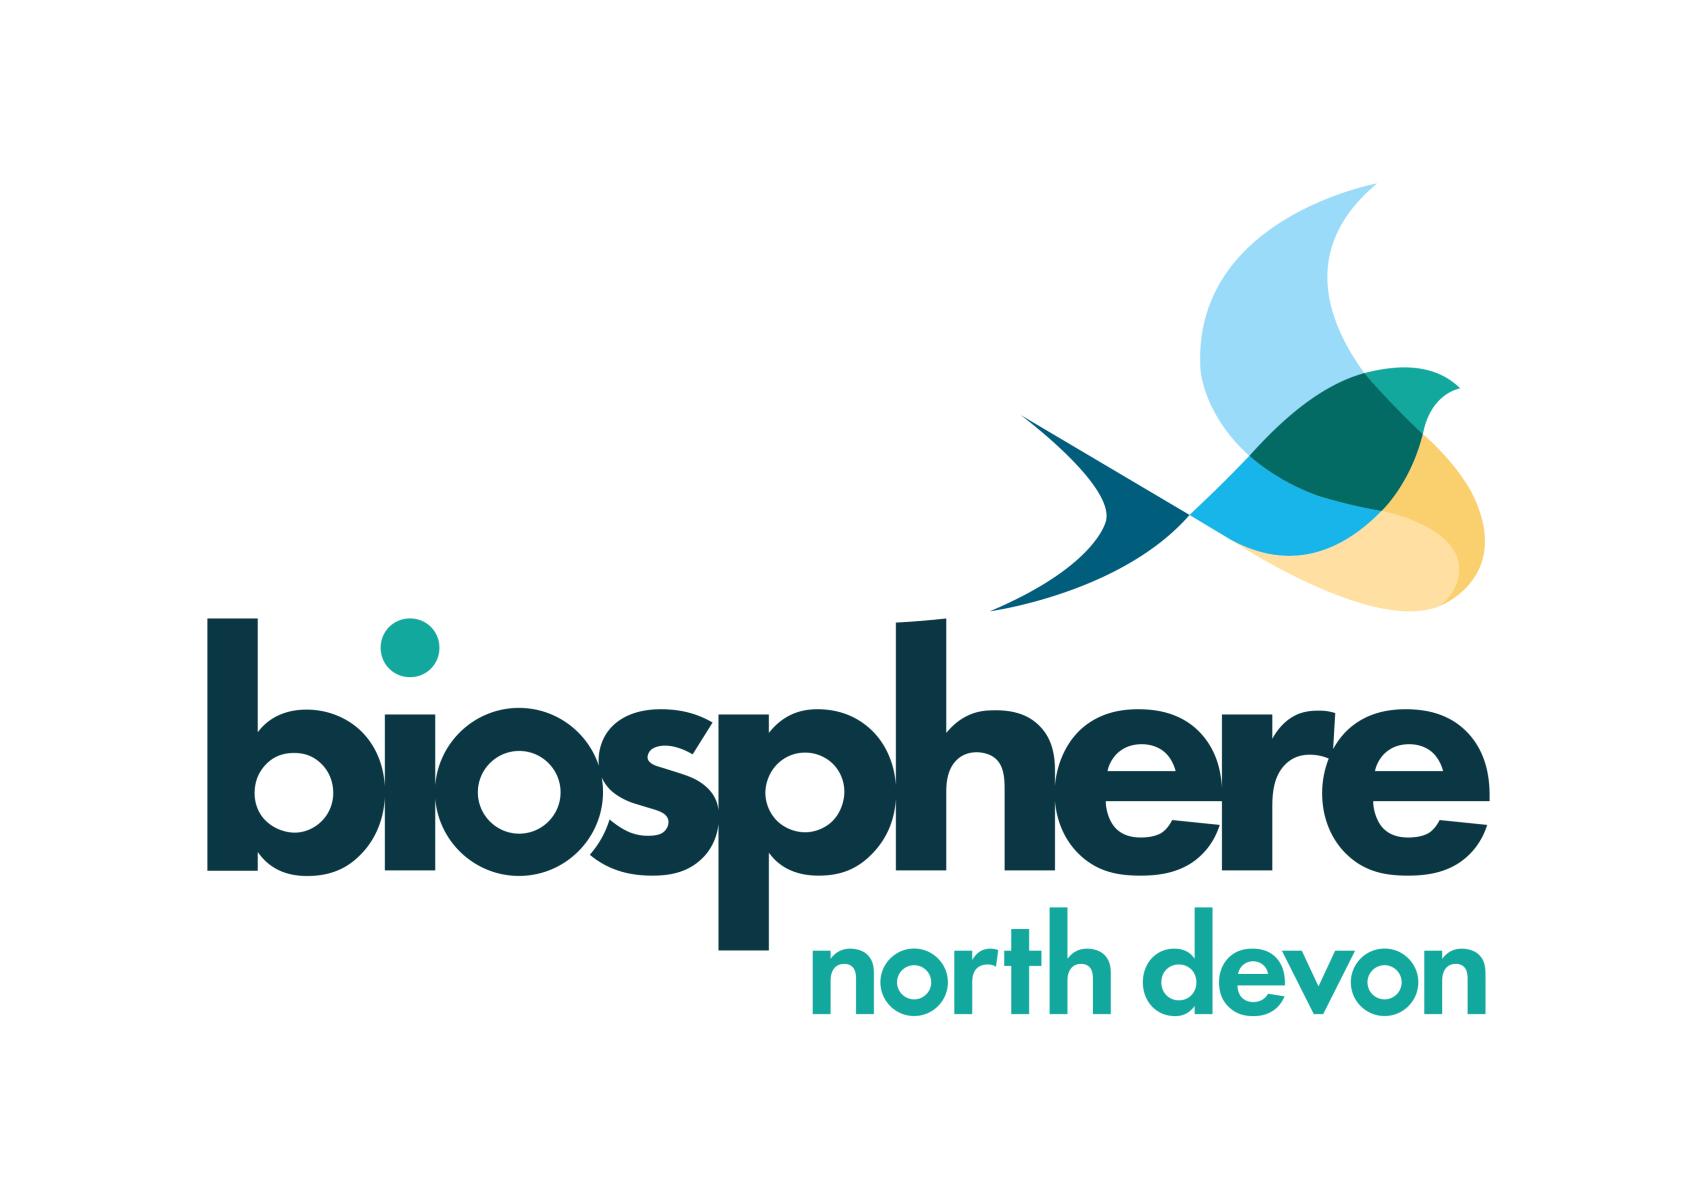 North Devon Biosphere logo